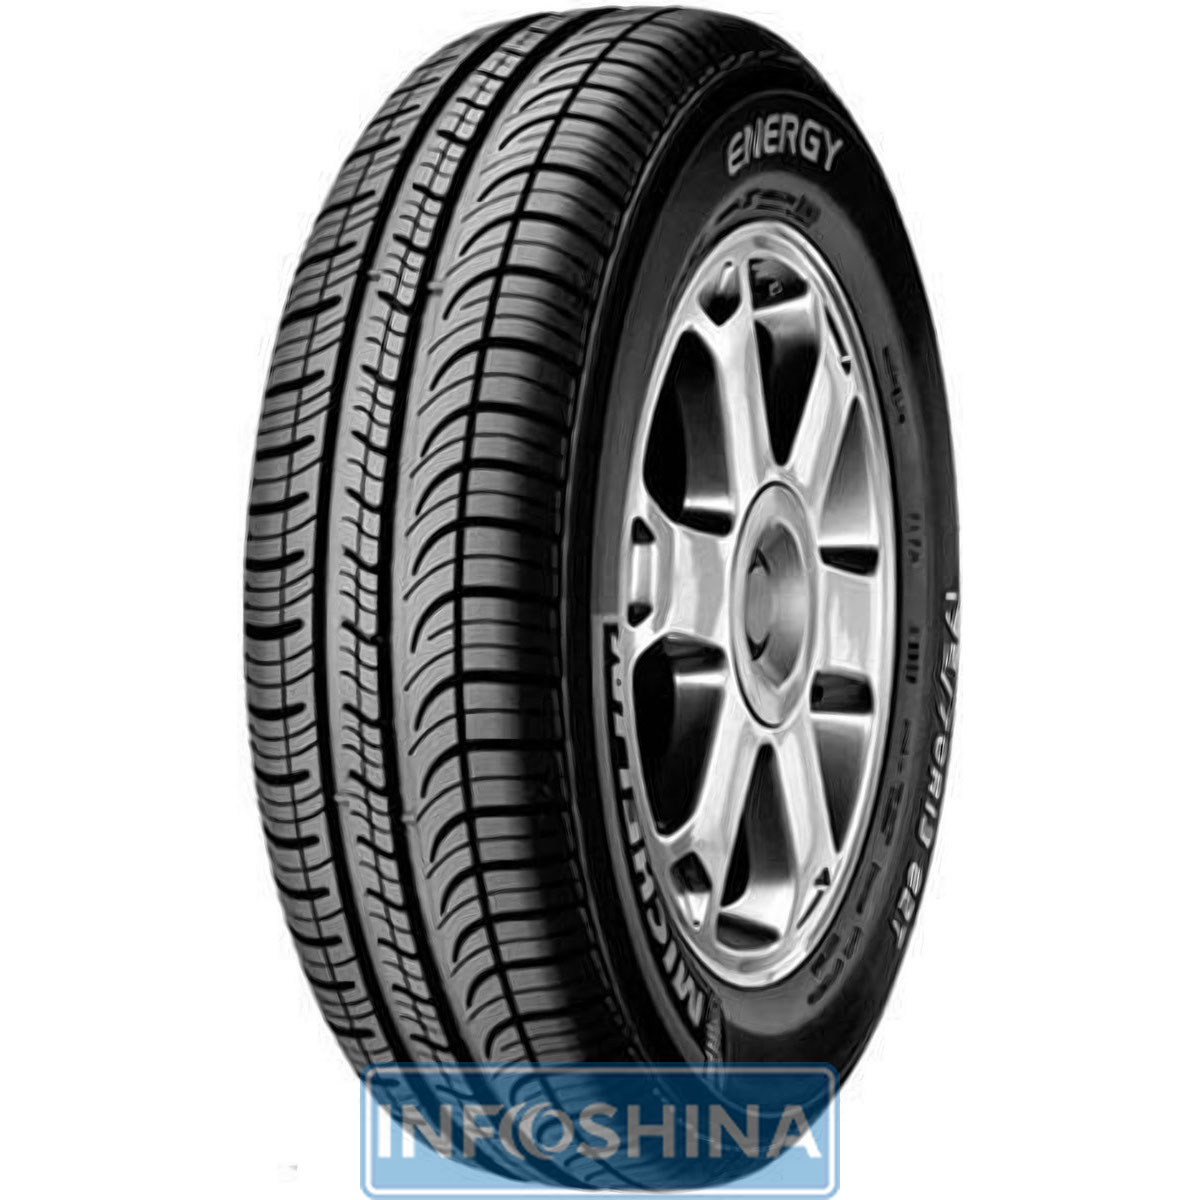 Купить шины Michelin Energy E3B-1 155/80 R13 79T